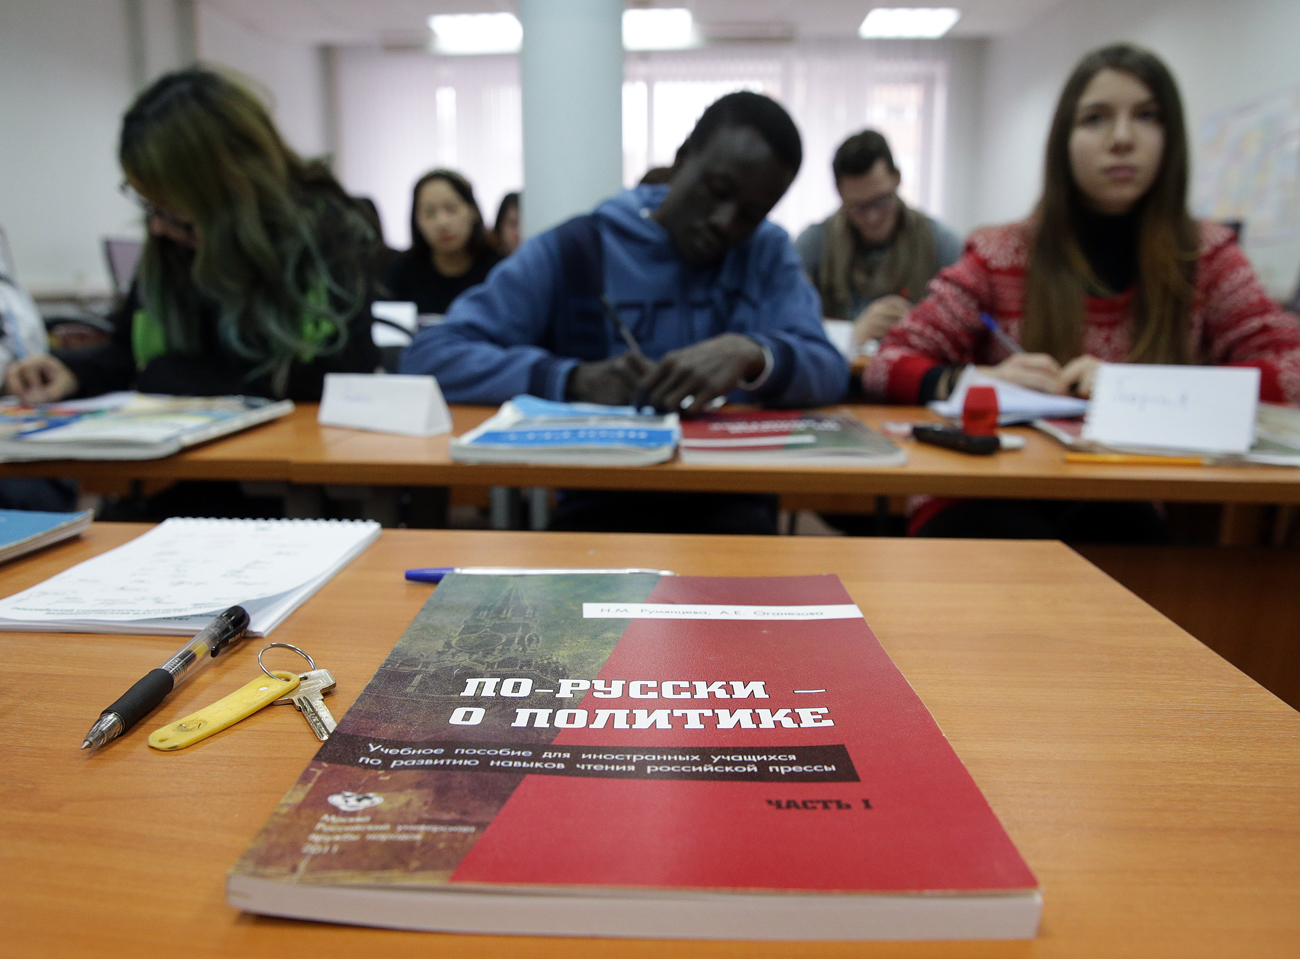 Les écoles supérieures russes ont touché pour leurs services en 2014/2015 quelque 200 millions d’euros.